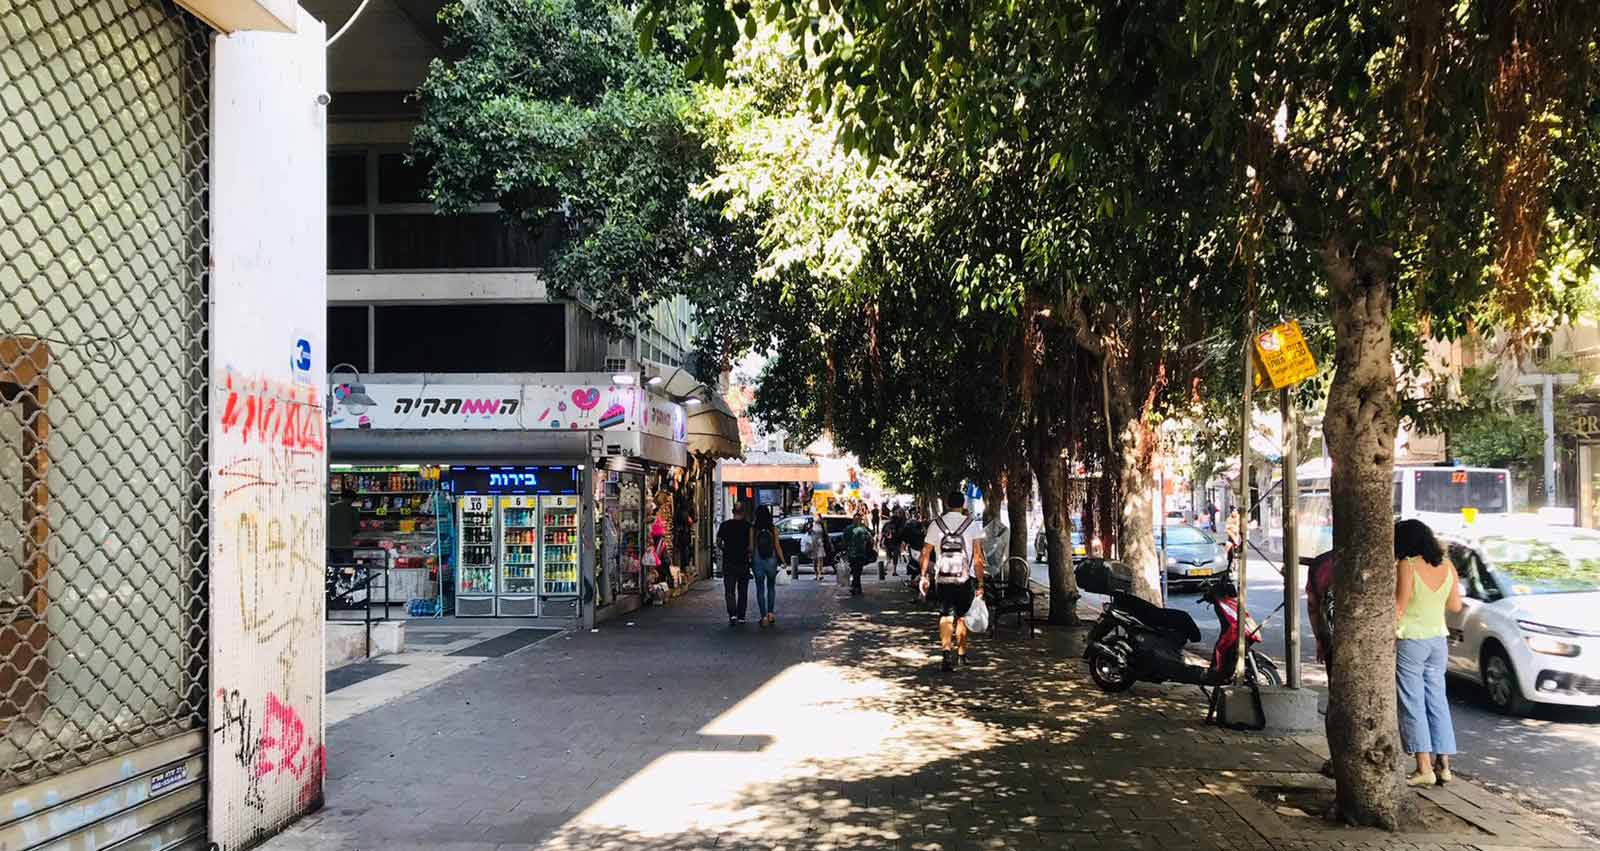 רחוב אלנבי, תל אביב. צילום: אביה בן דוד